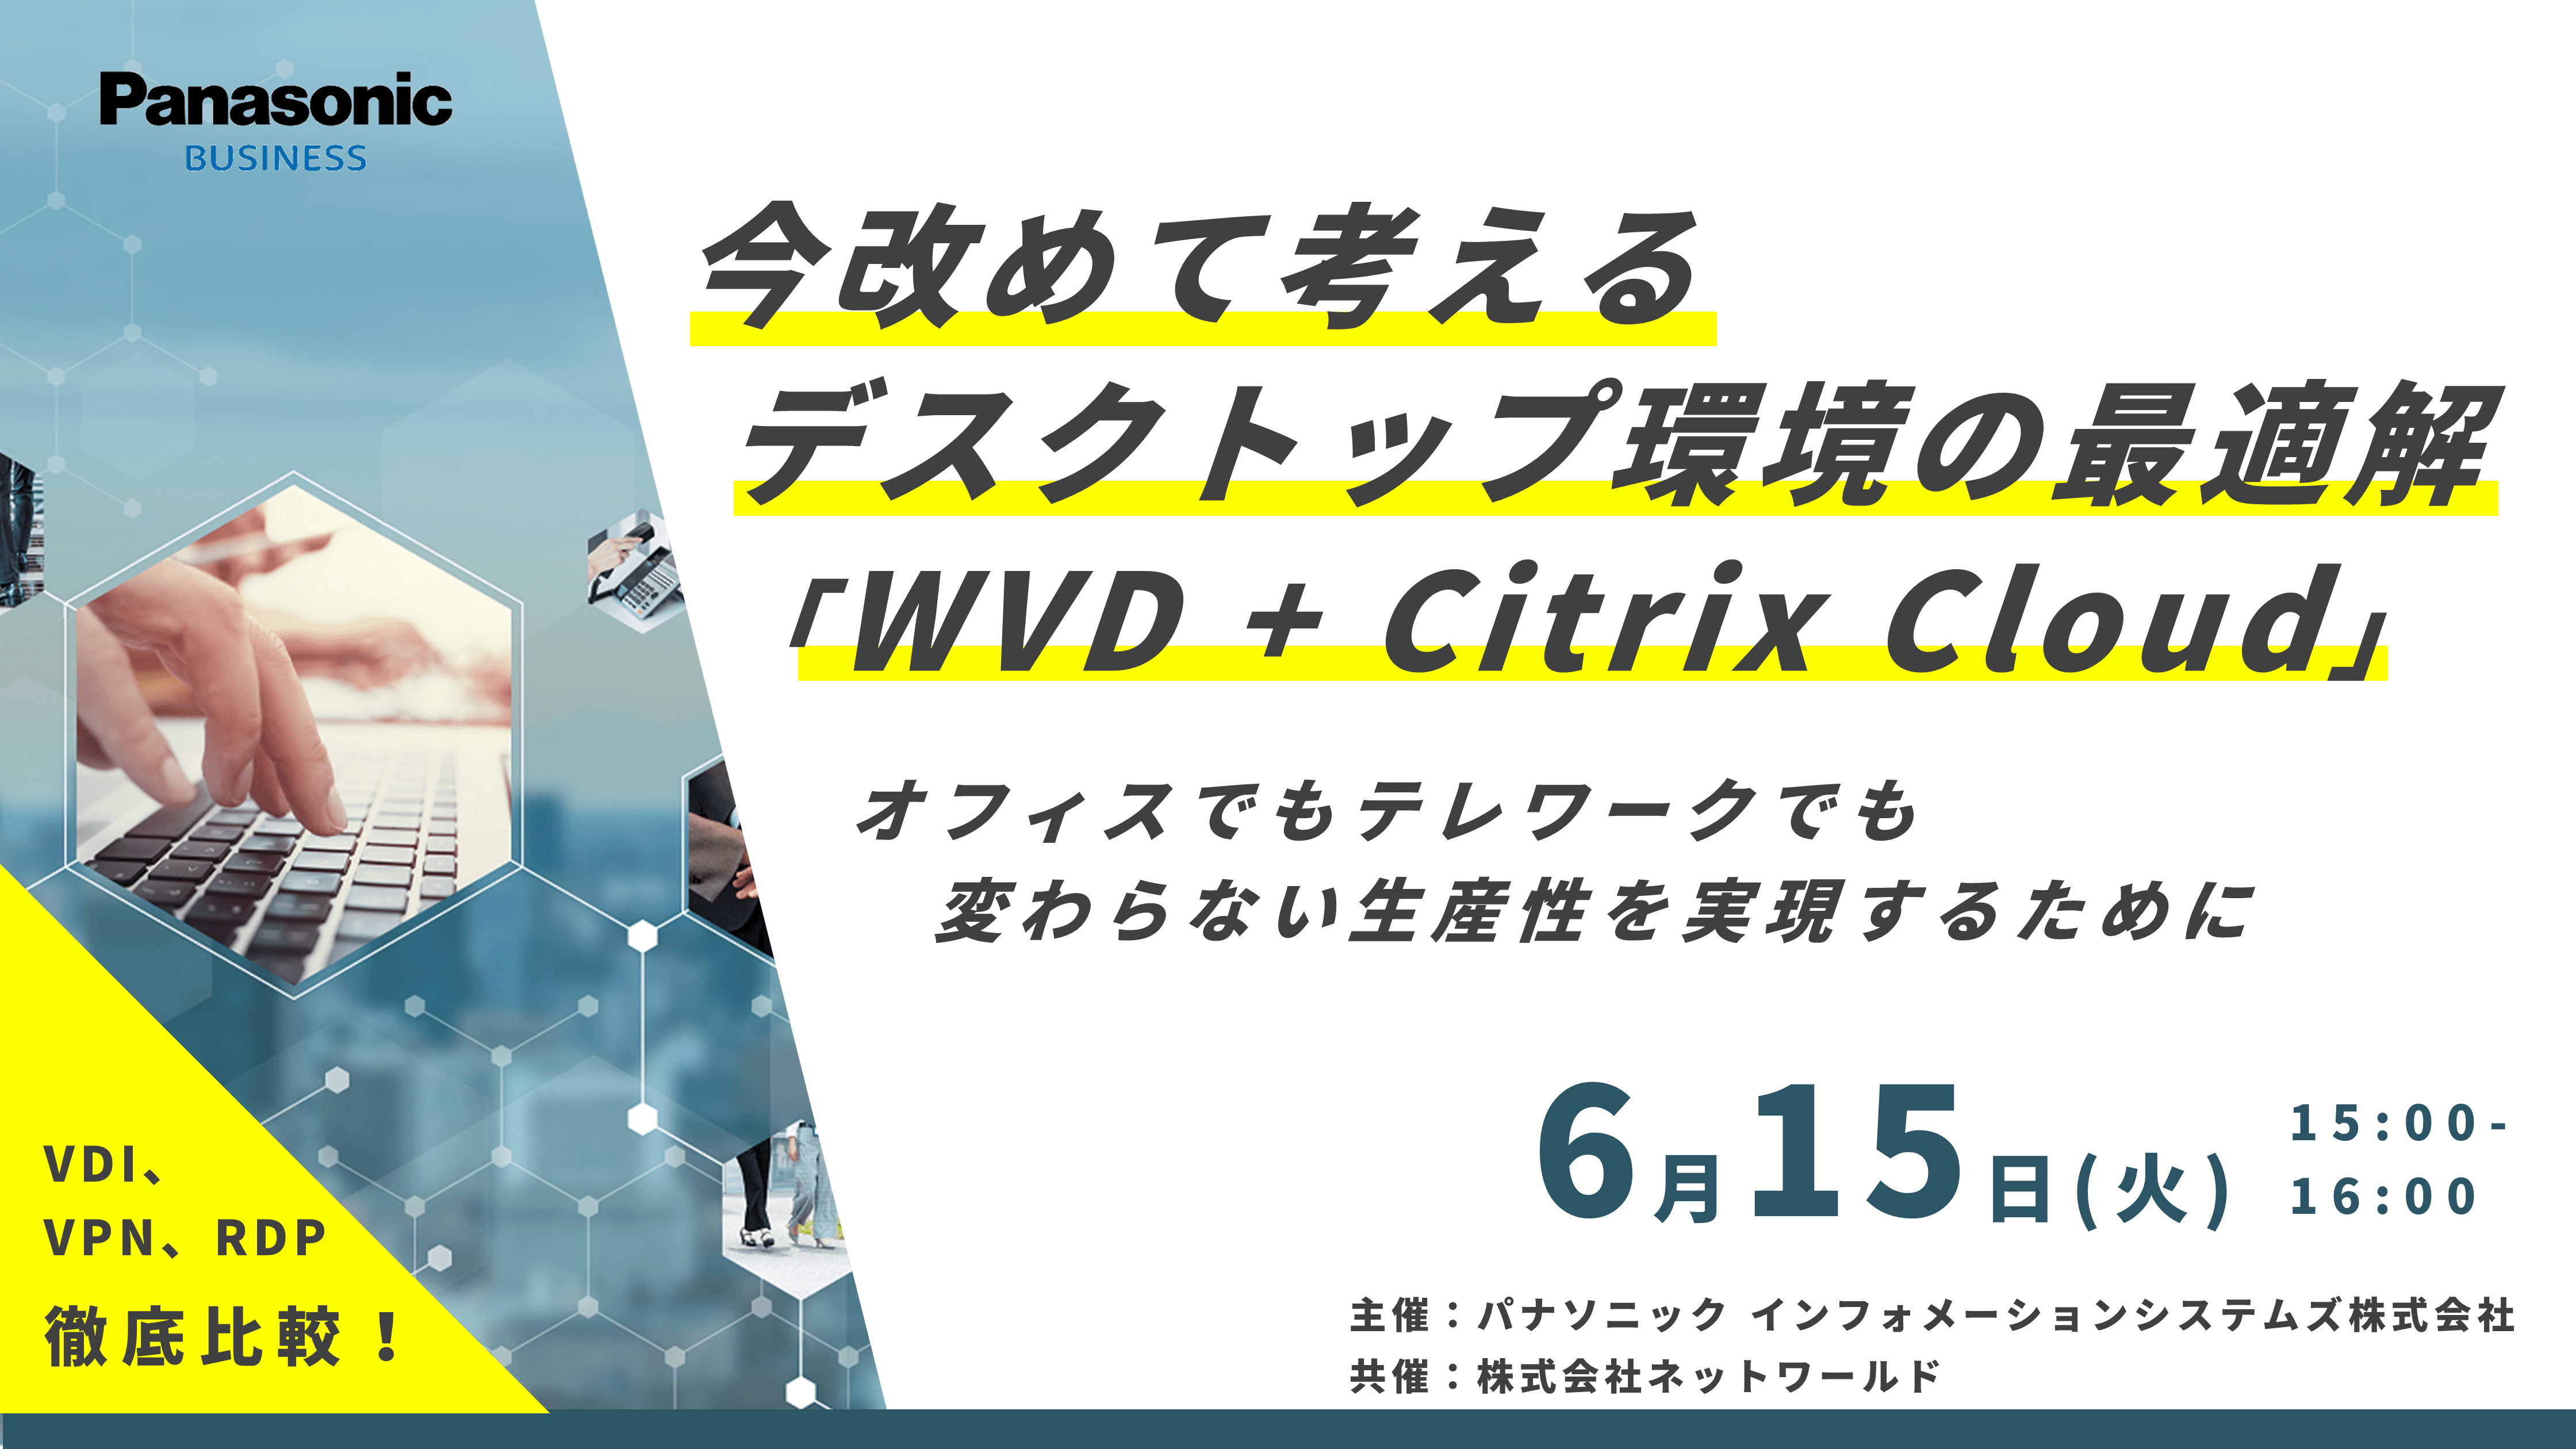 6 15 火 今改めて考えるデスクトップ環境の最適解 Wvd Citrix Cloud オンラインセミナー開催 パナソニック インフォメーションシステムズ株式会社のプレスリリース